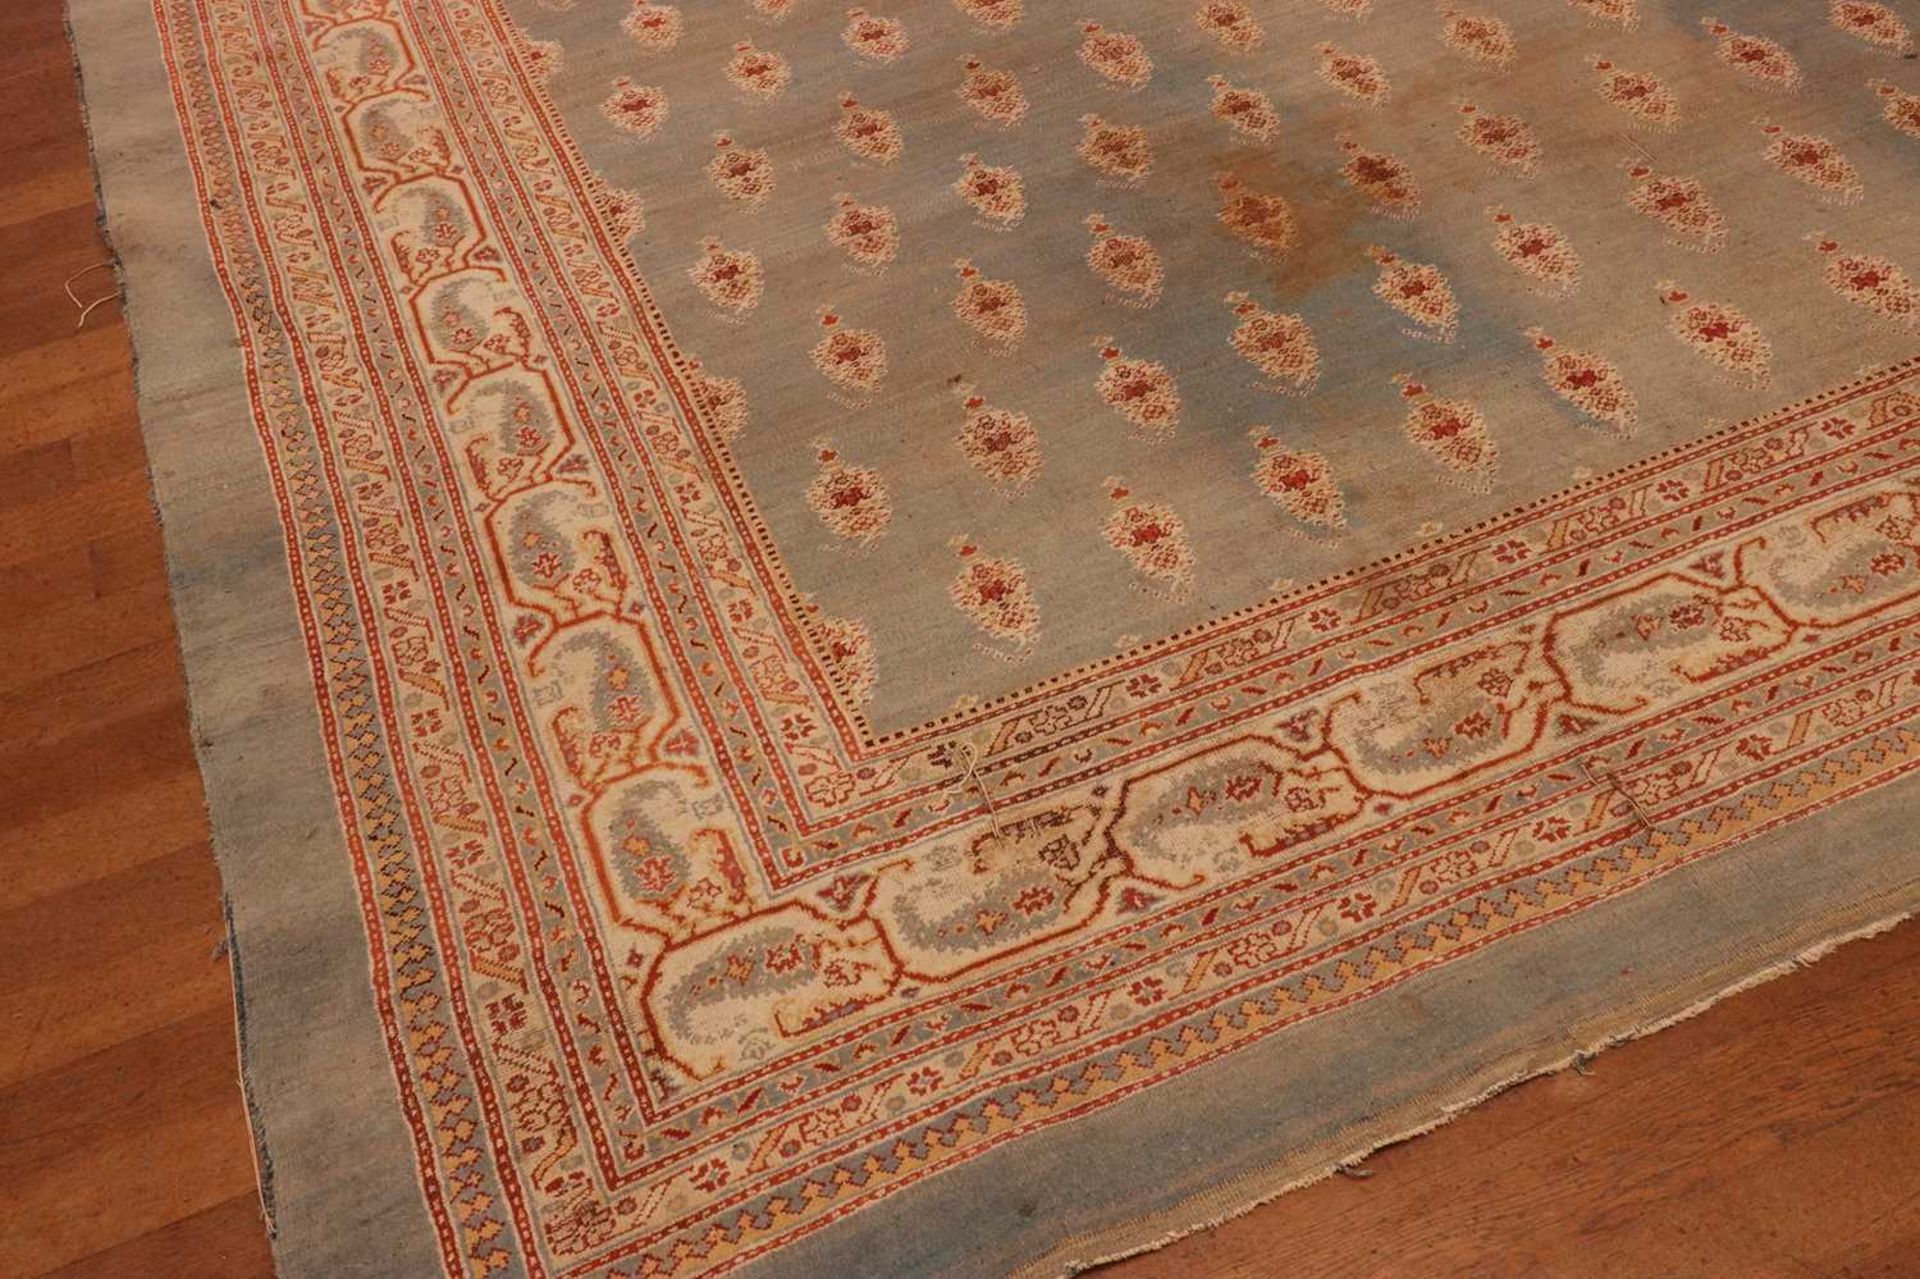 ☘ A large blue Amritsar carpet, - Image 13 of 38